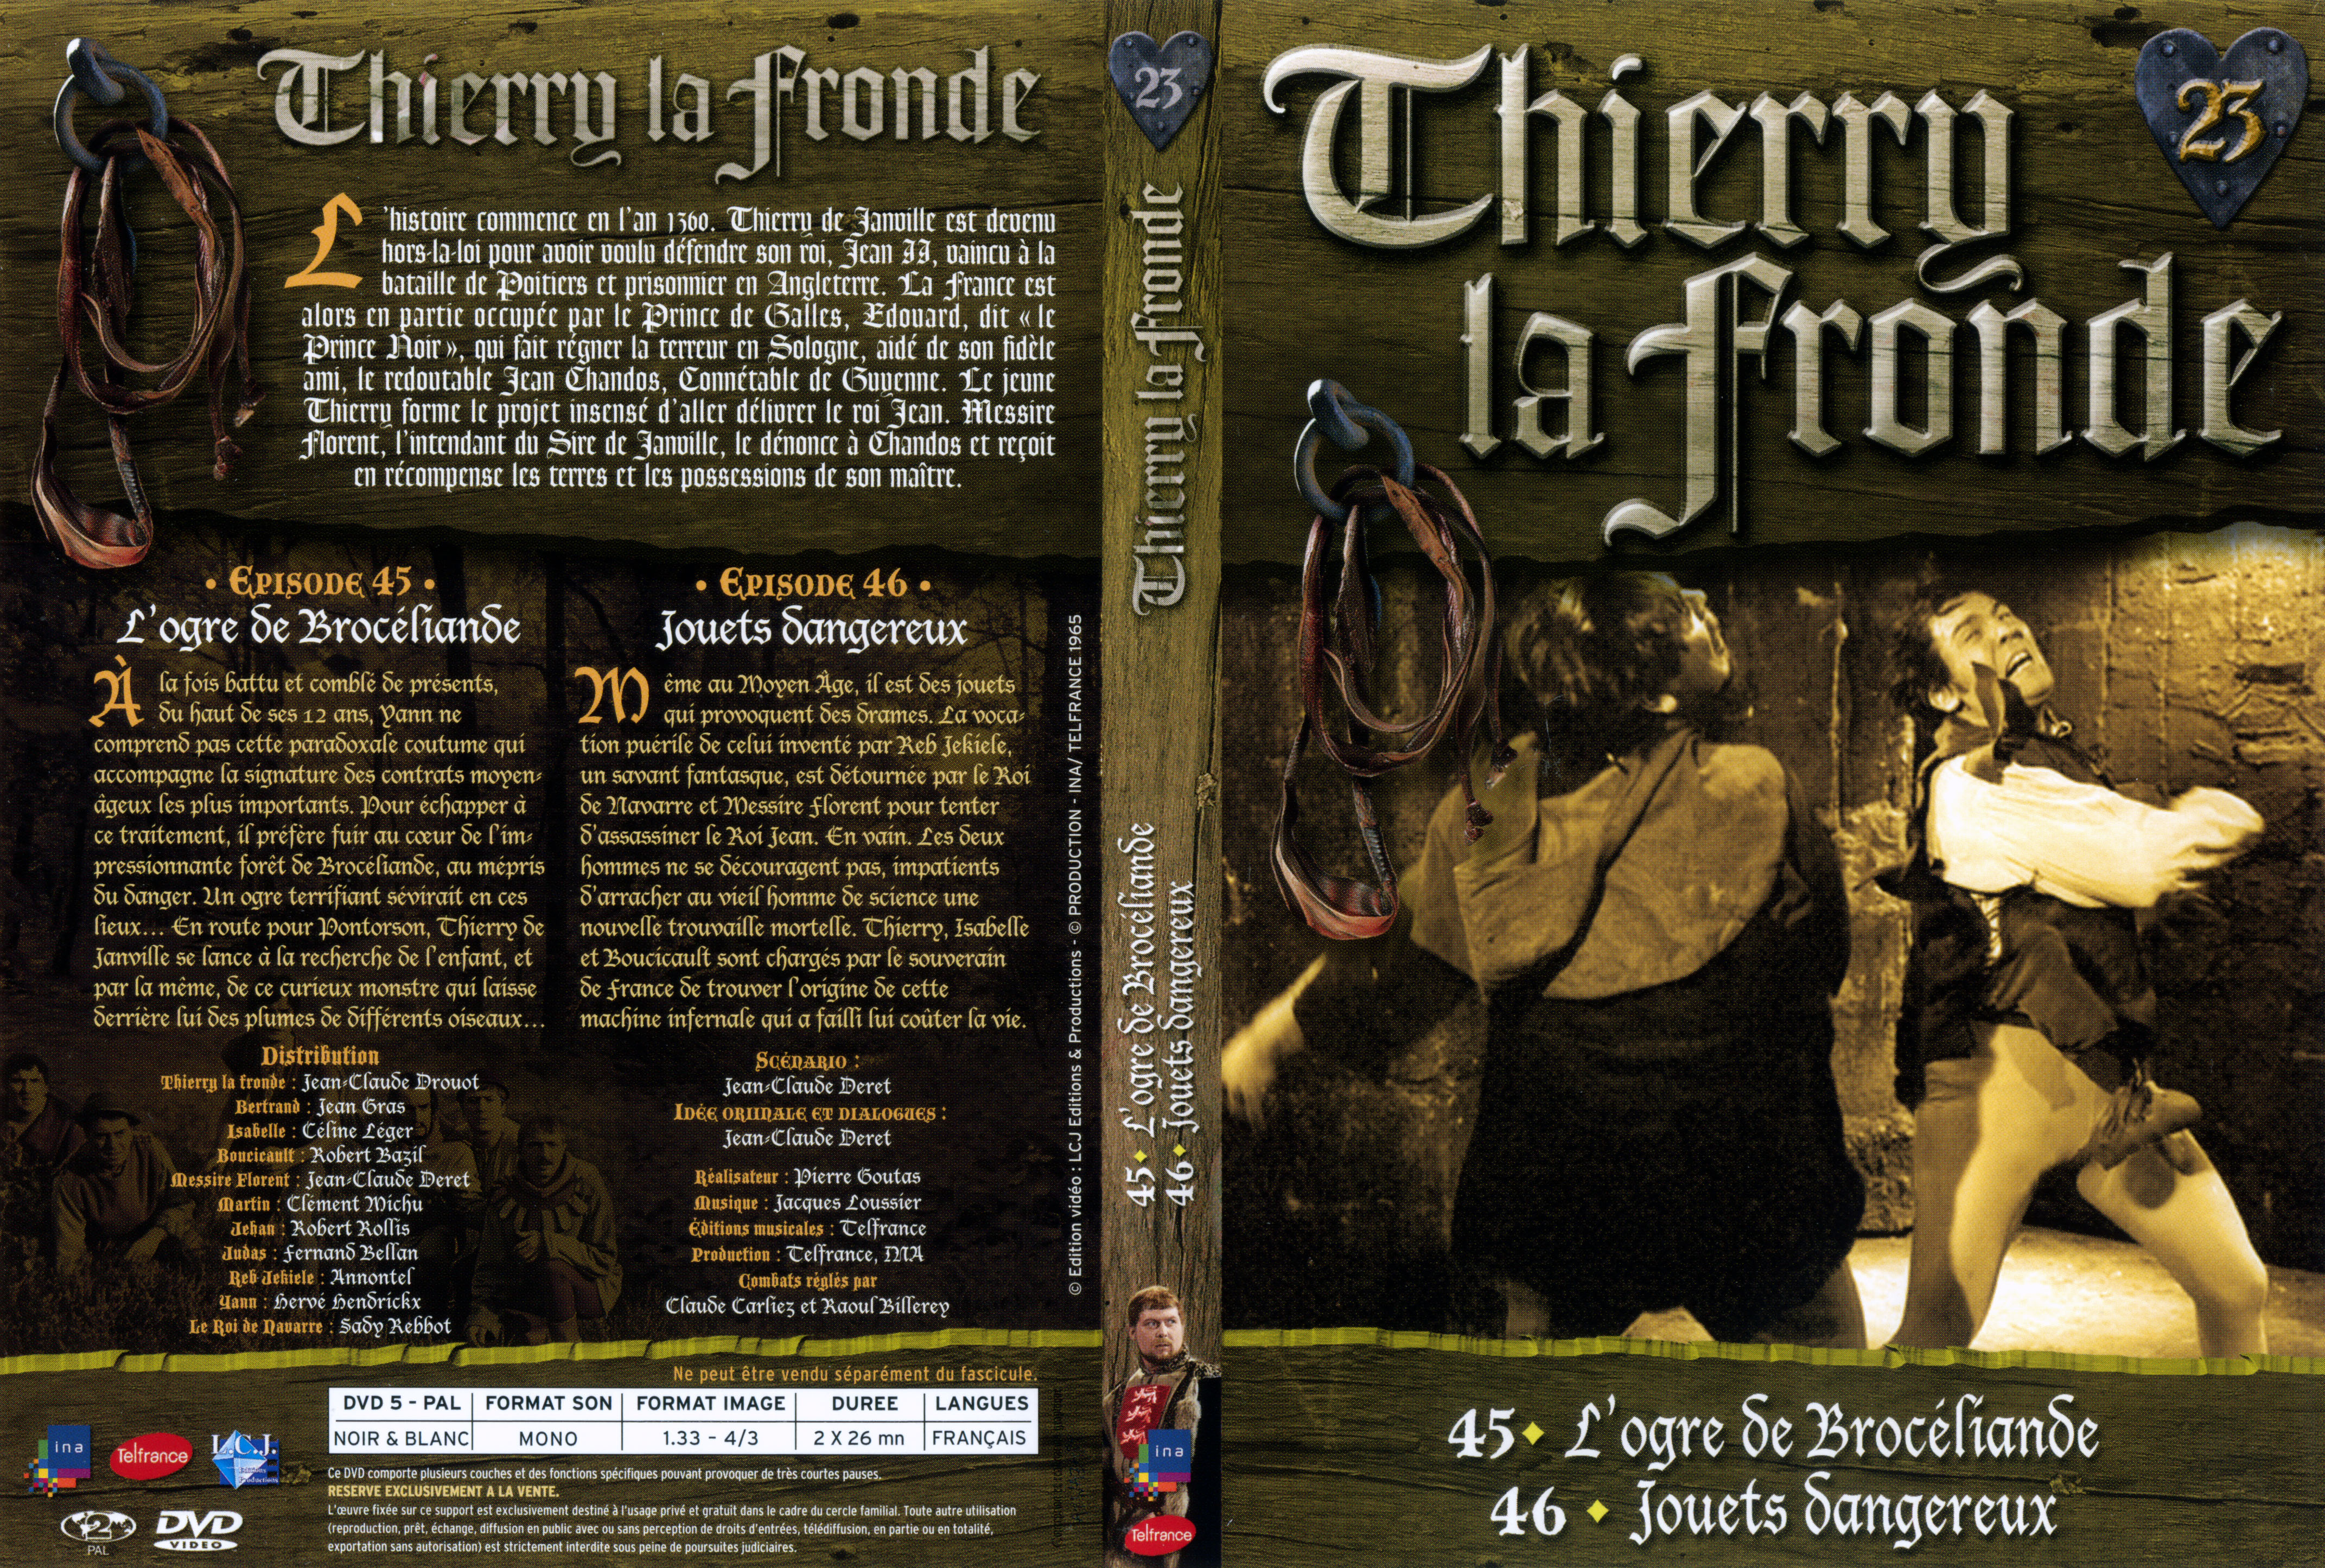 Jaquette DVD Thierry la Fronde vol 23